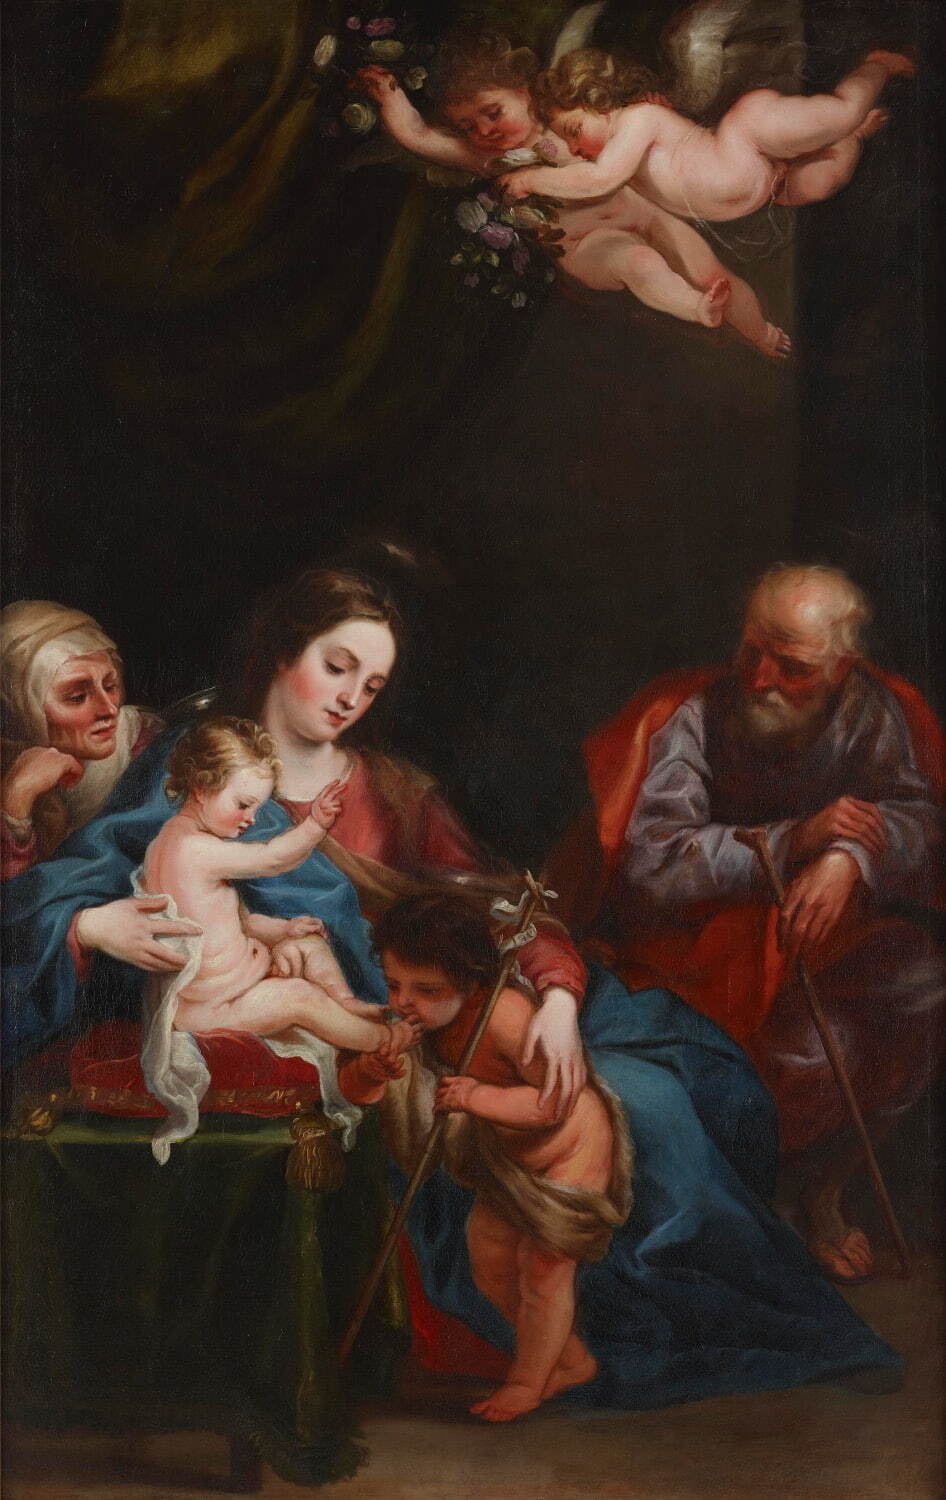 フアン・カレーニョ・デ・ミランダ 《聖アンナ、聖ヨアキム、洗礼者聖ヨハネのいる聖母子》
1646-55年頃 油彩・カンヴァス 長崎県美術館